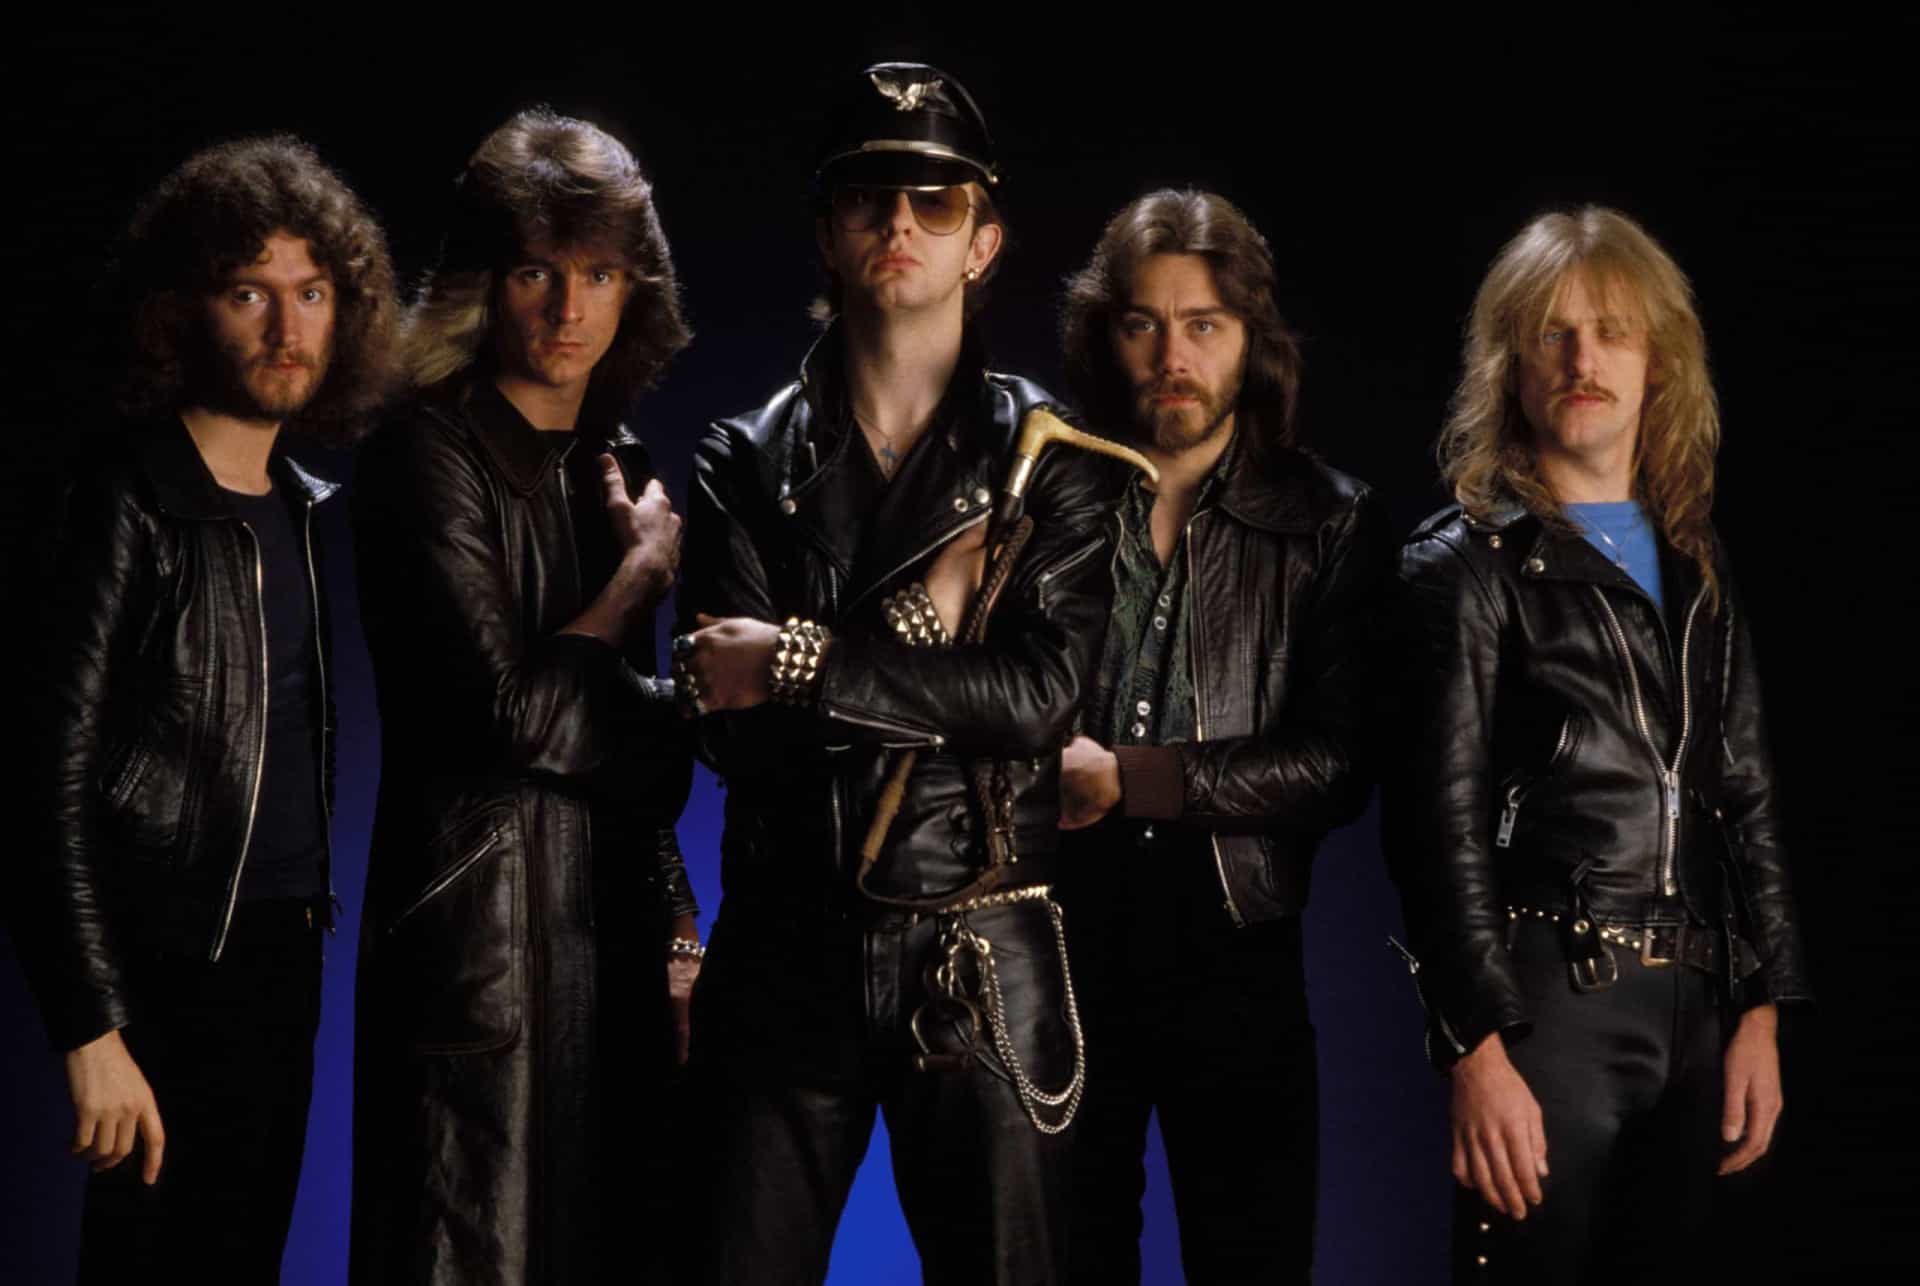 Great heavy. Группа Judas Priest. Группа Judas Priest 1970. Judas Priest 1978. Judas Priest фото.